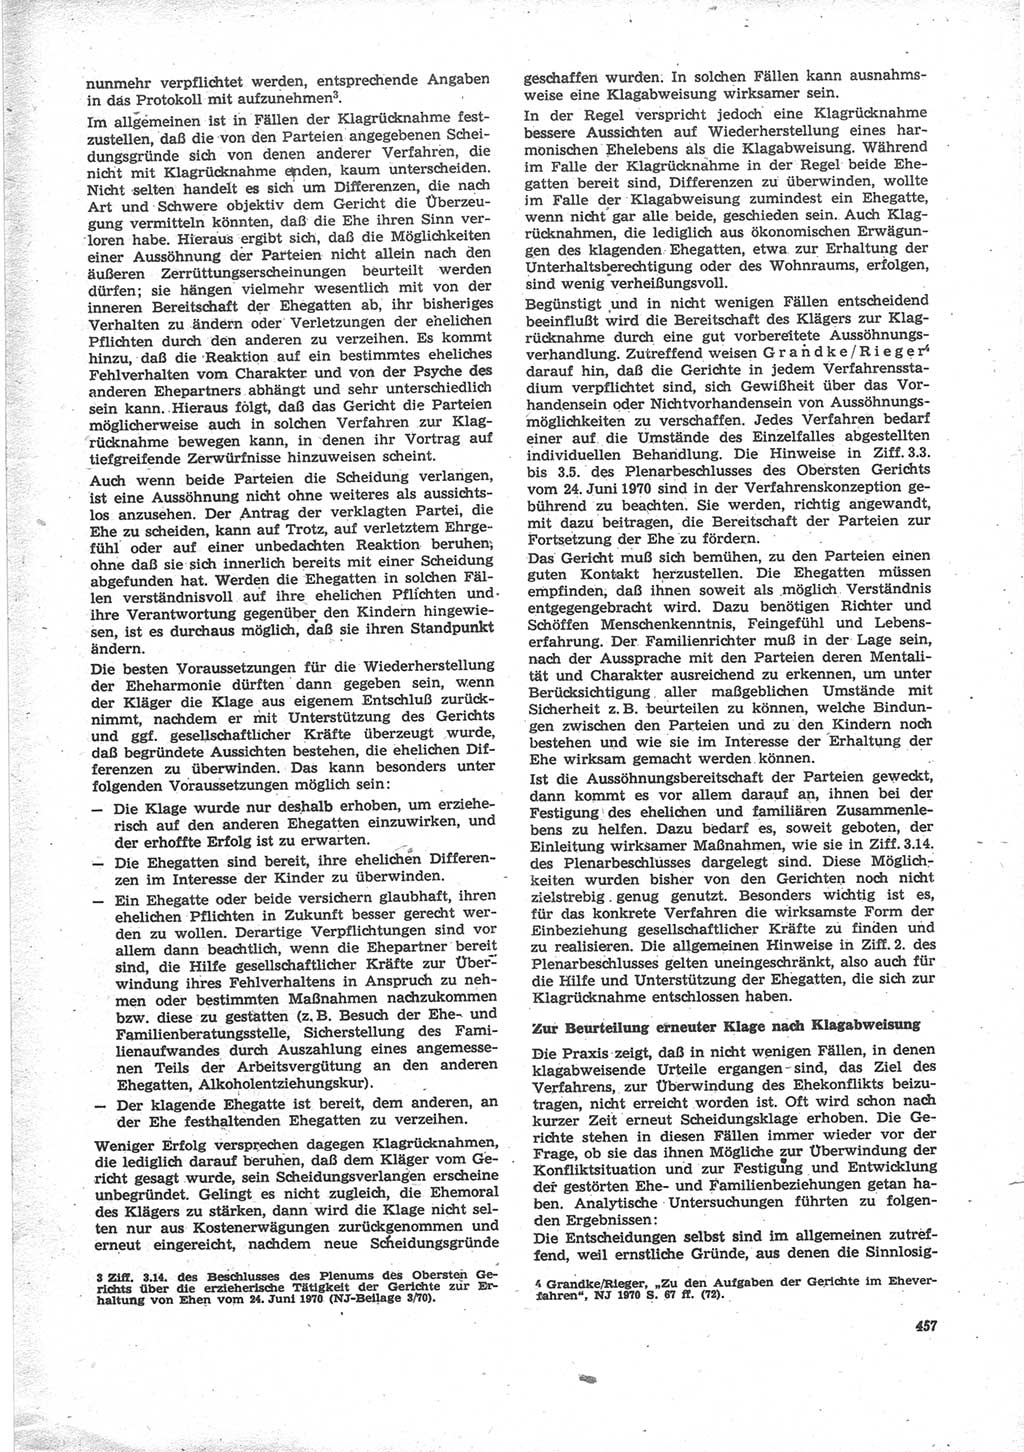 Neue Justiz (NJ), Zeitschrift für Recht und Rechtswissenschaft [Deutsche Demokratische Republik (DDR)], 24. Jahrgang 1970, Seite 457 (NJ DDR 1970, S. 457)